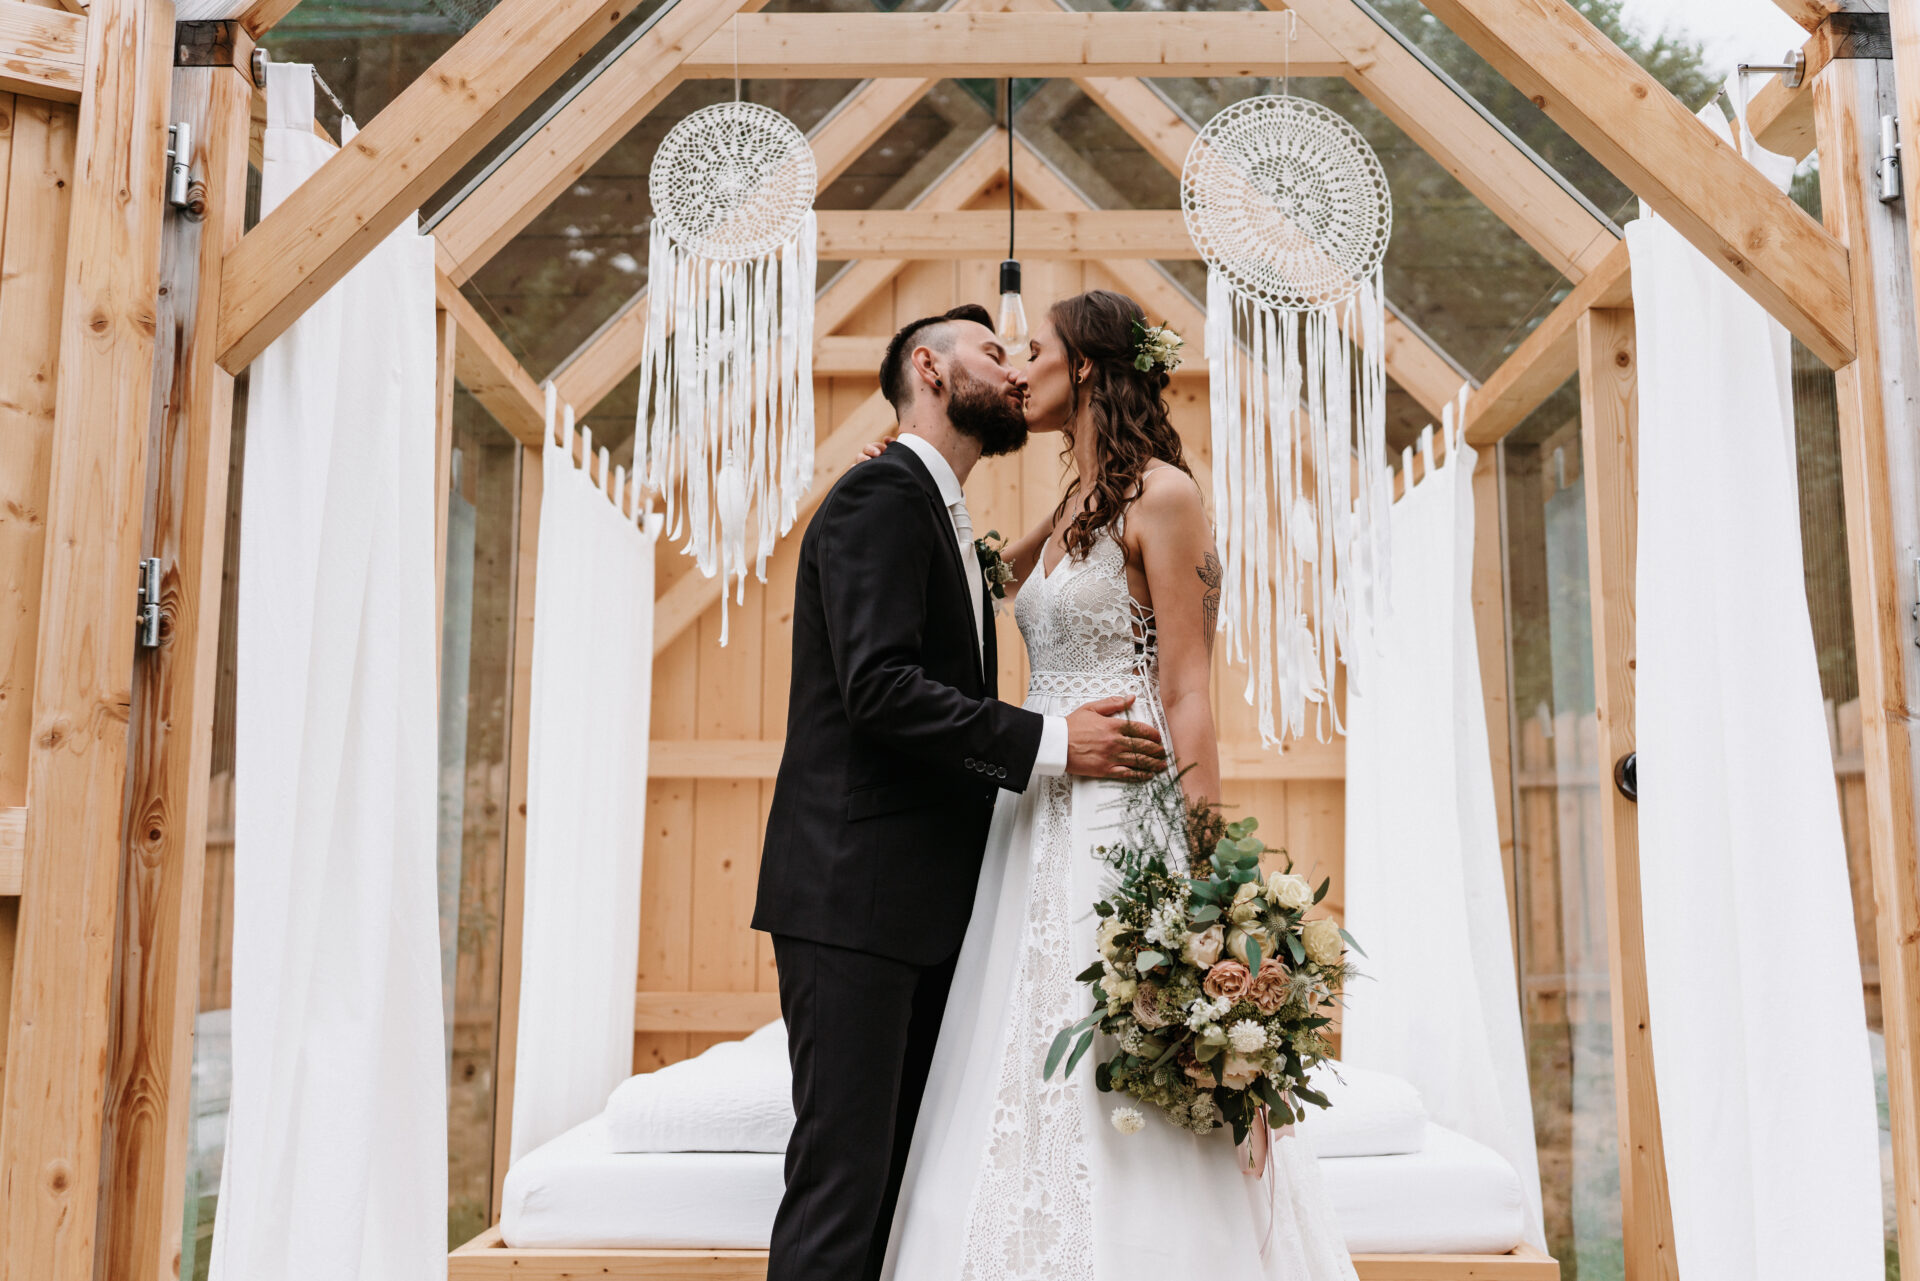 Svatební fotograf - svatební fotografie nevěsta a ženich při polibku